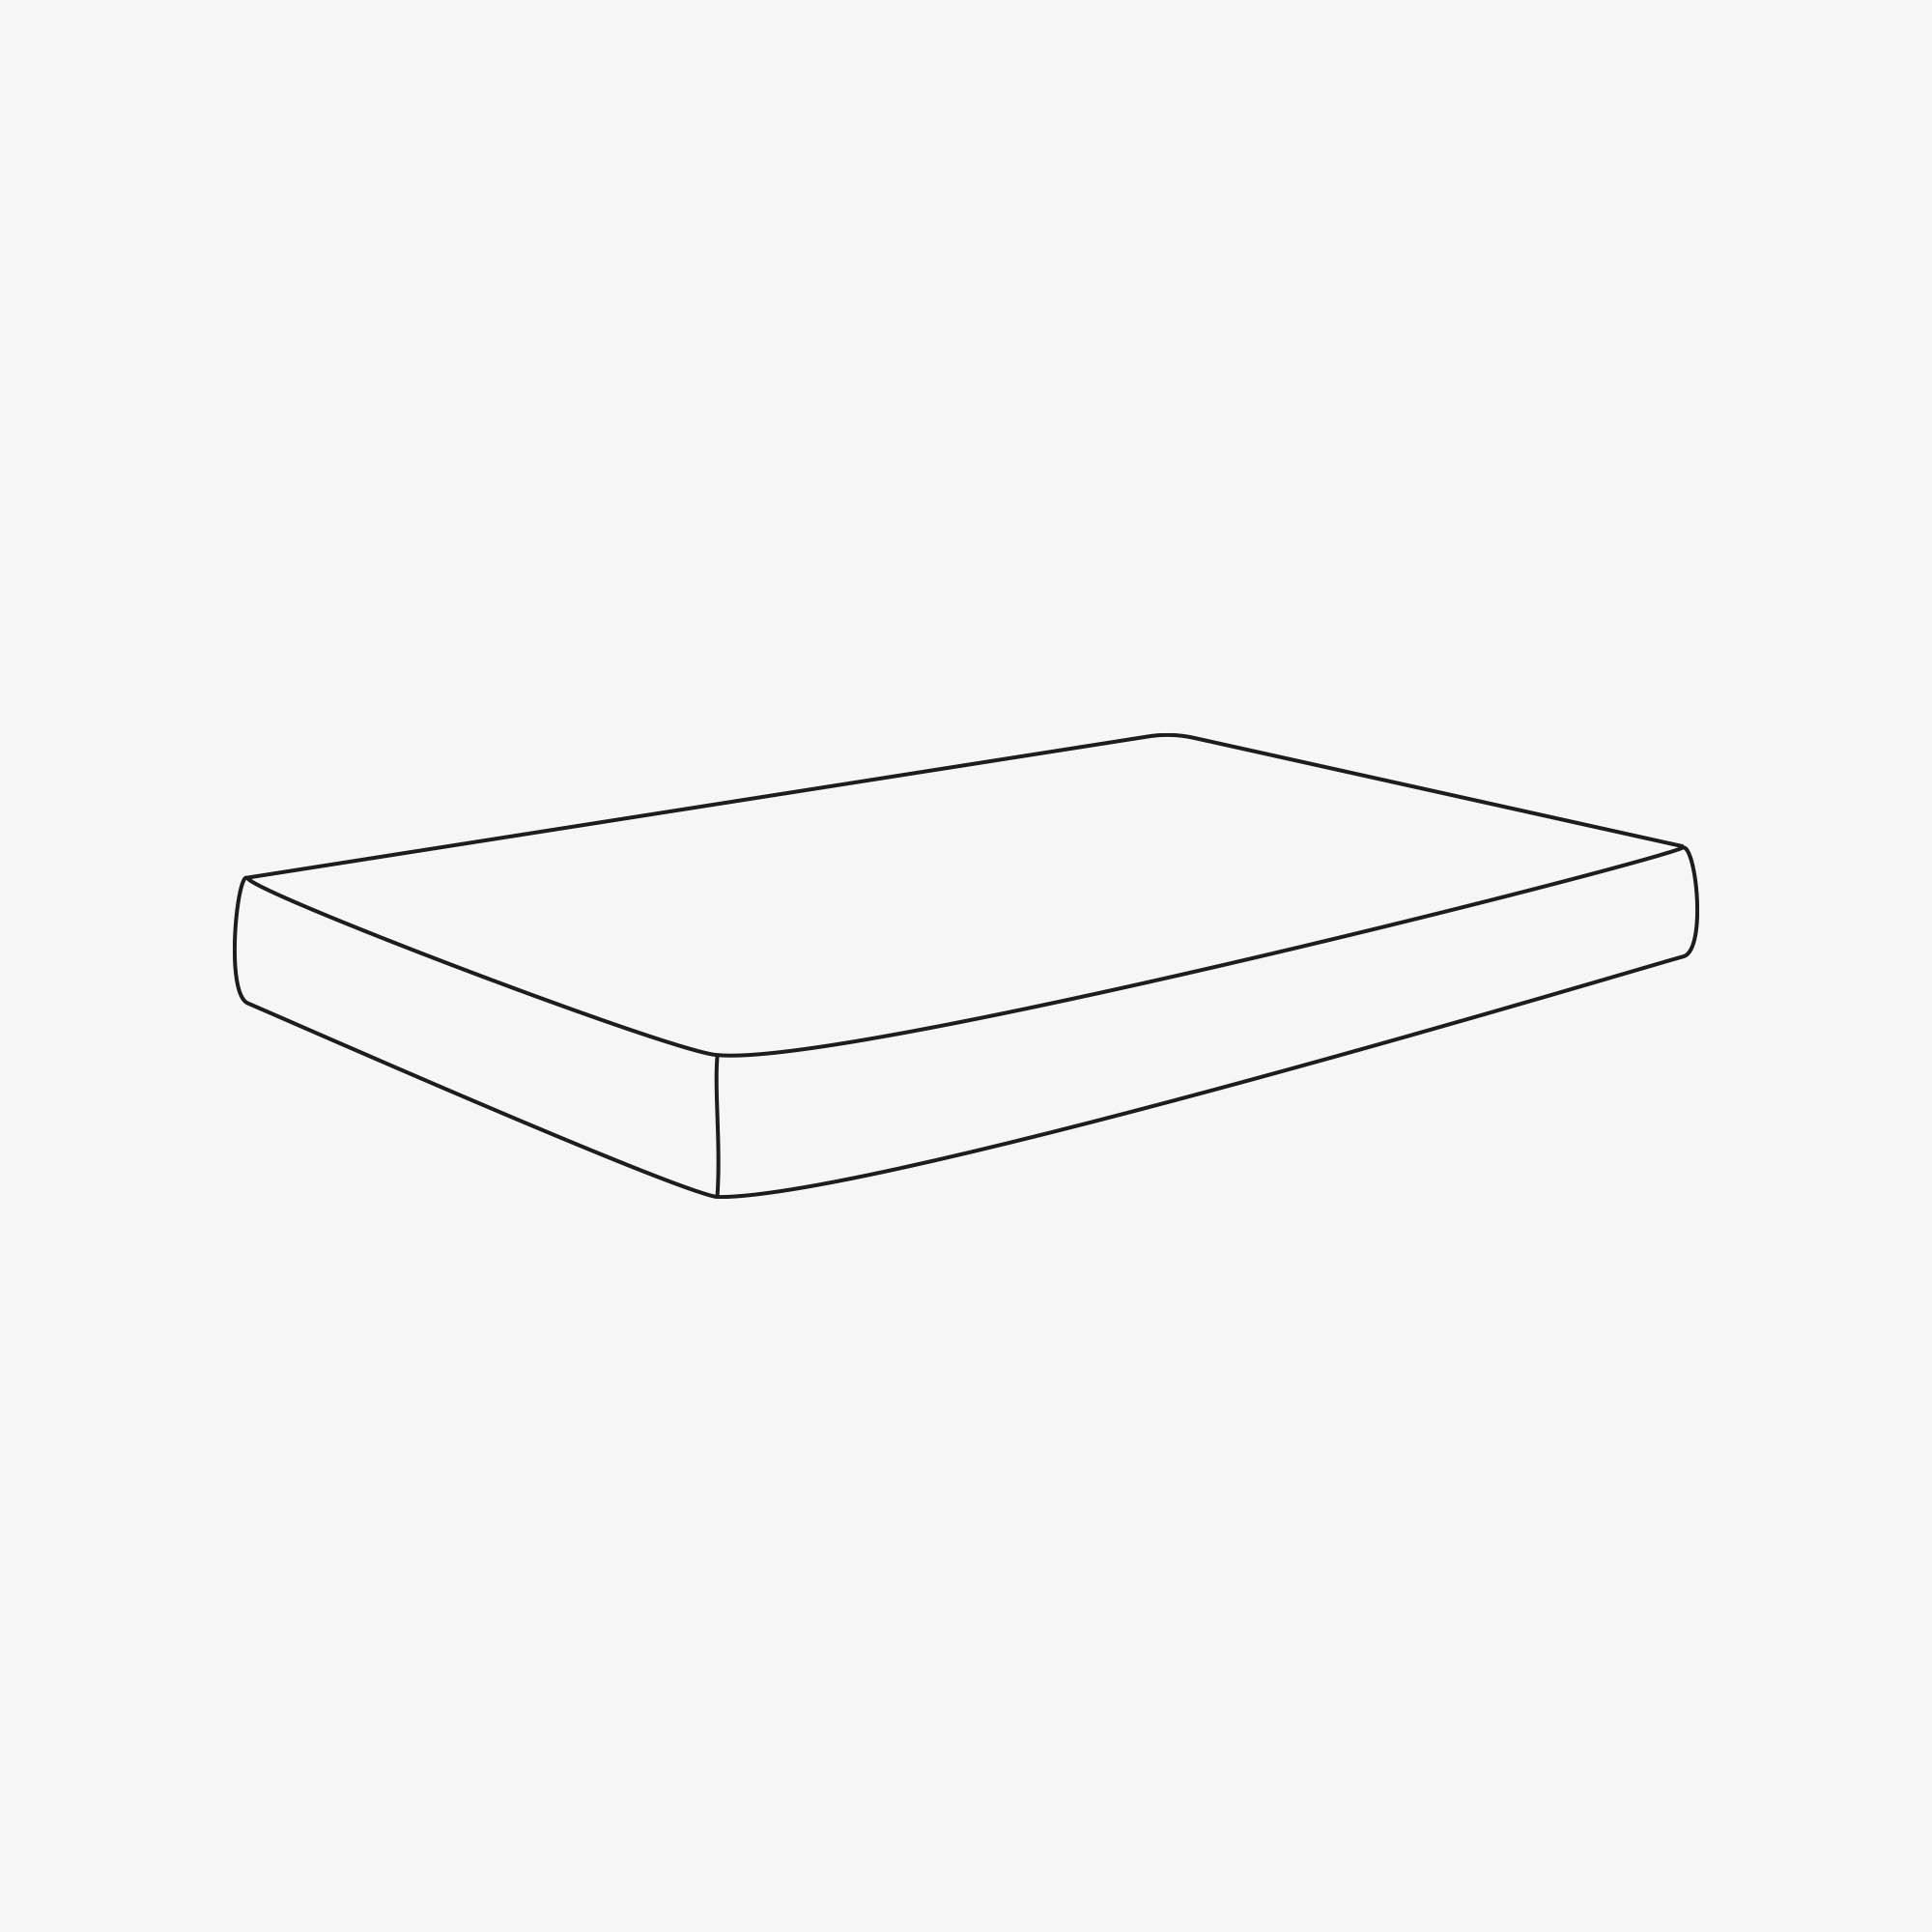 ROOM IN A BOX mattress drawing